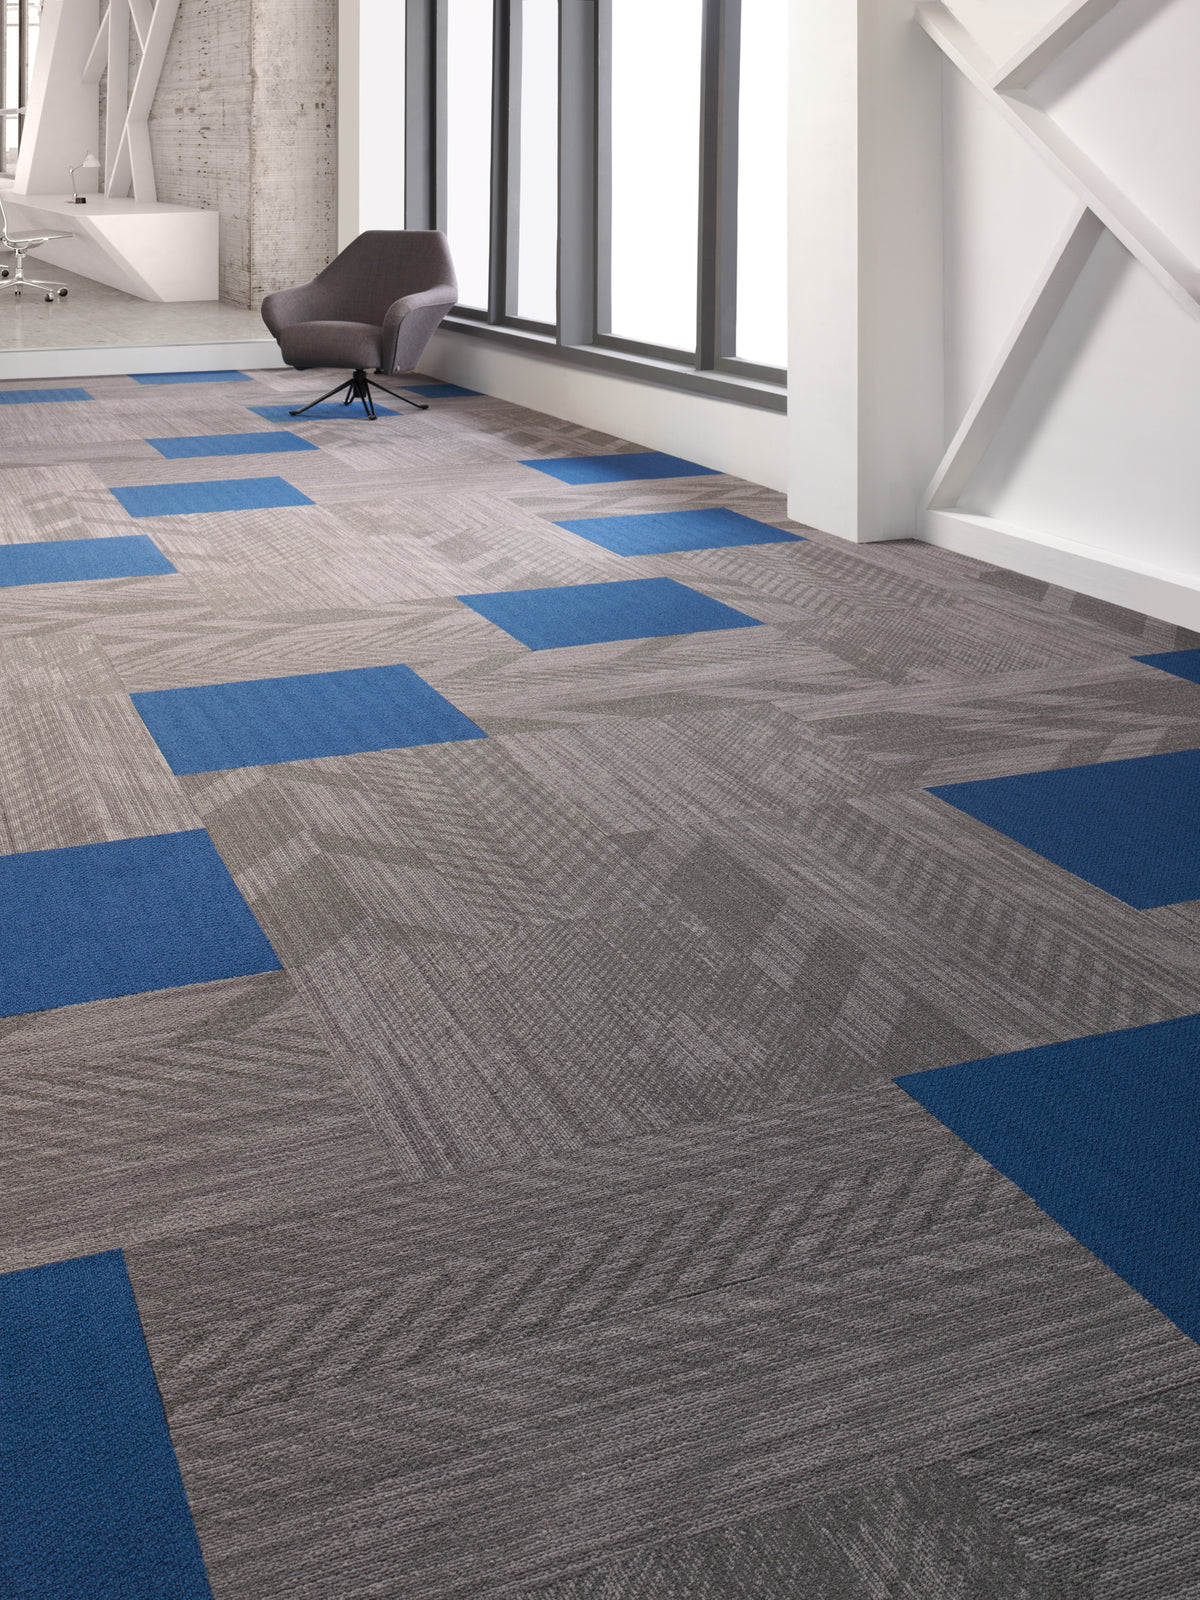 Mohawk Group - Colorbeat - Commercial Carpet Tile - Hazy